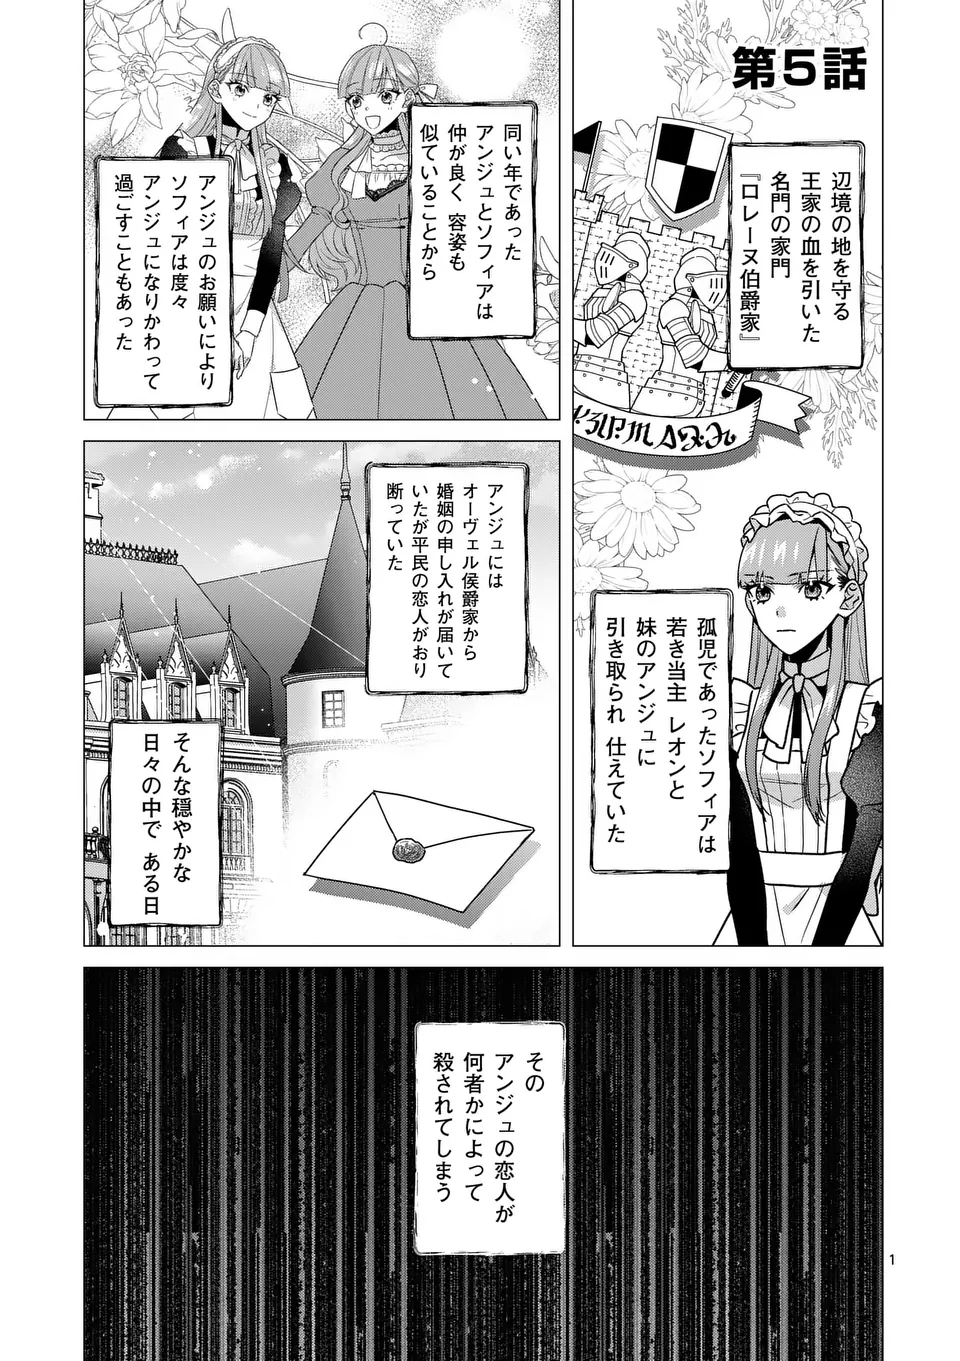 Nisemono Reijou no Fukushuu – Adauchi no Tame, 5-nin no Koushaku Reisoku no Konyakusha ni narimasu - Chapter 5 - Page 1